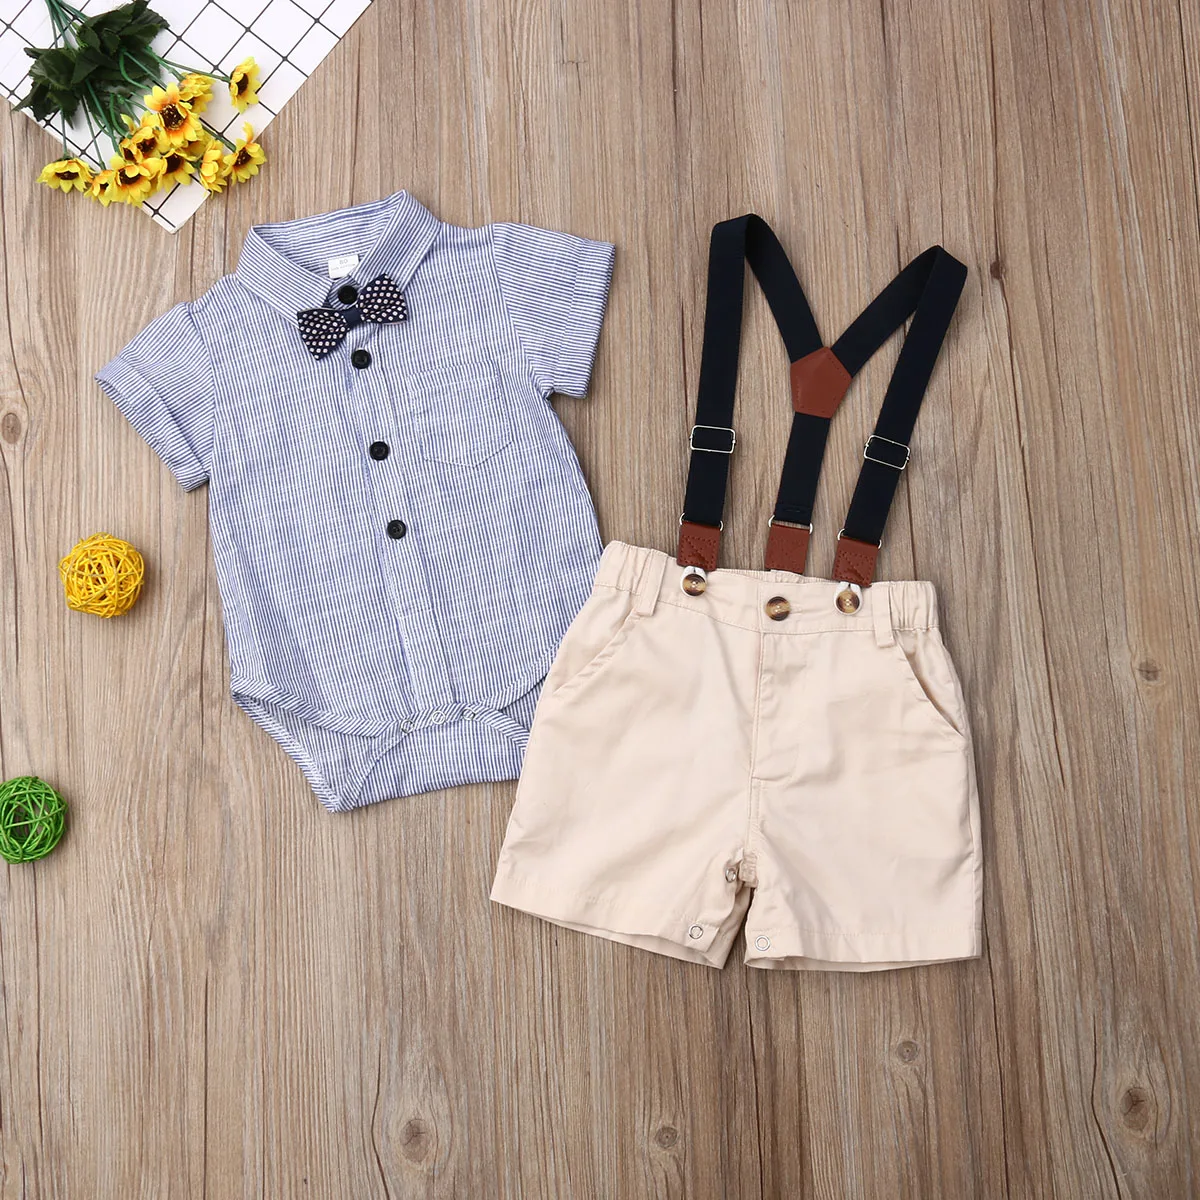 Pudcoco/одежда джентльмена для новорожденных мальчиков; рубашка в полоску; комбинезон; топы; шорты на бретелях; комплект из 2 предметов; праздничная одежда